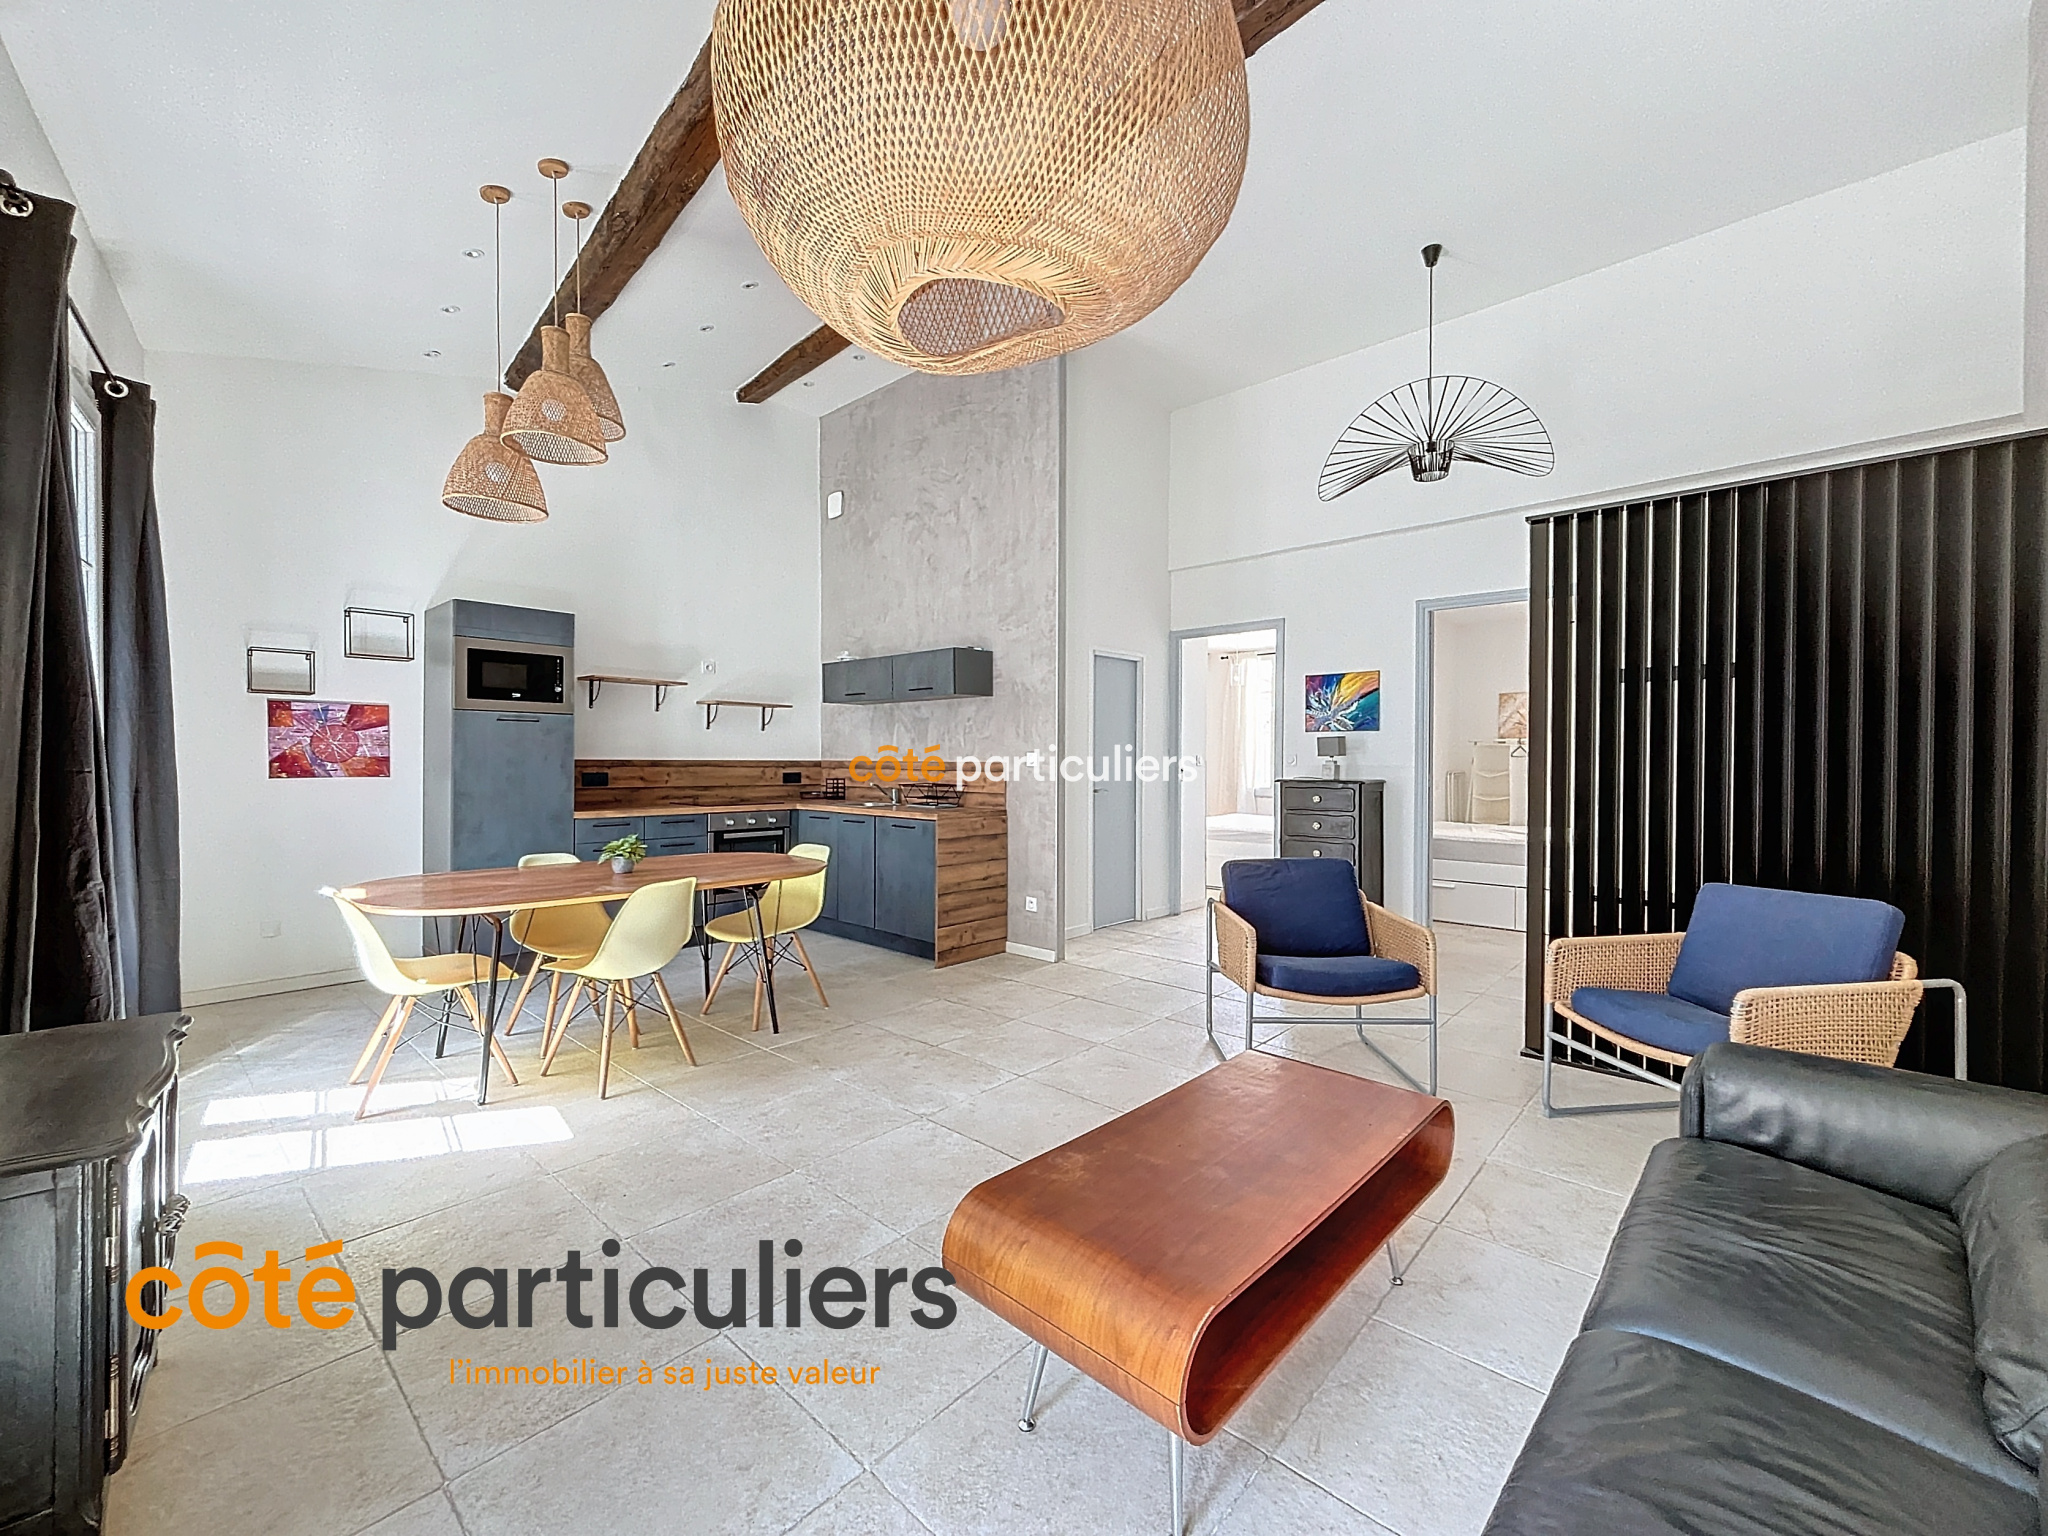 Vente Appartement 60m² 3 Pièces à Montpellier (34000) - Côté Particuliers